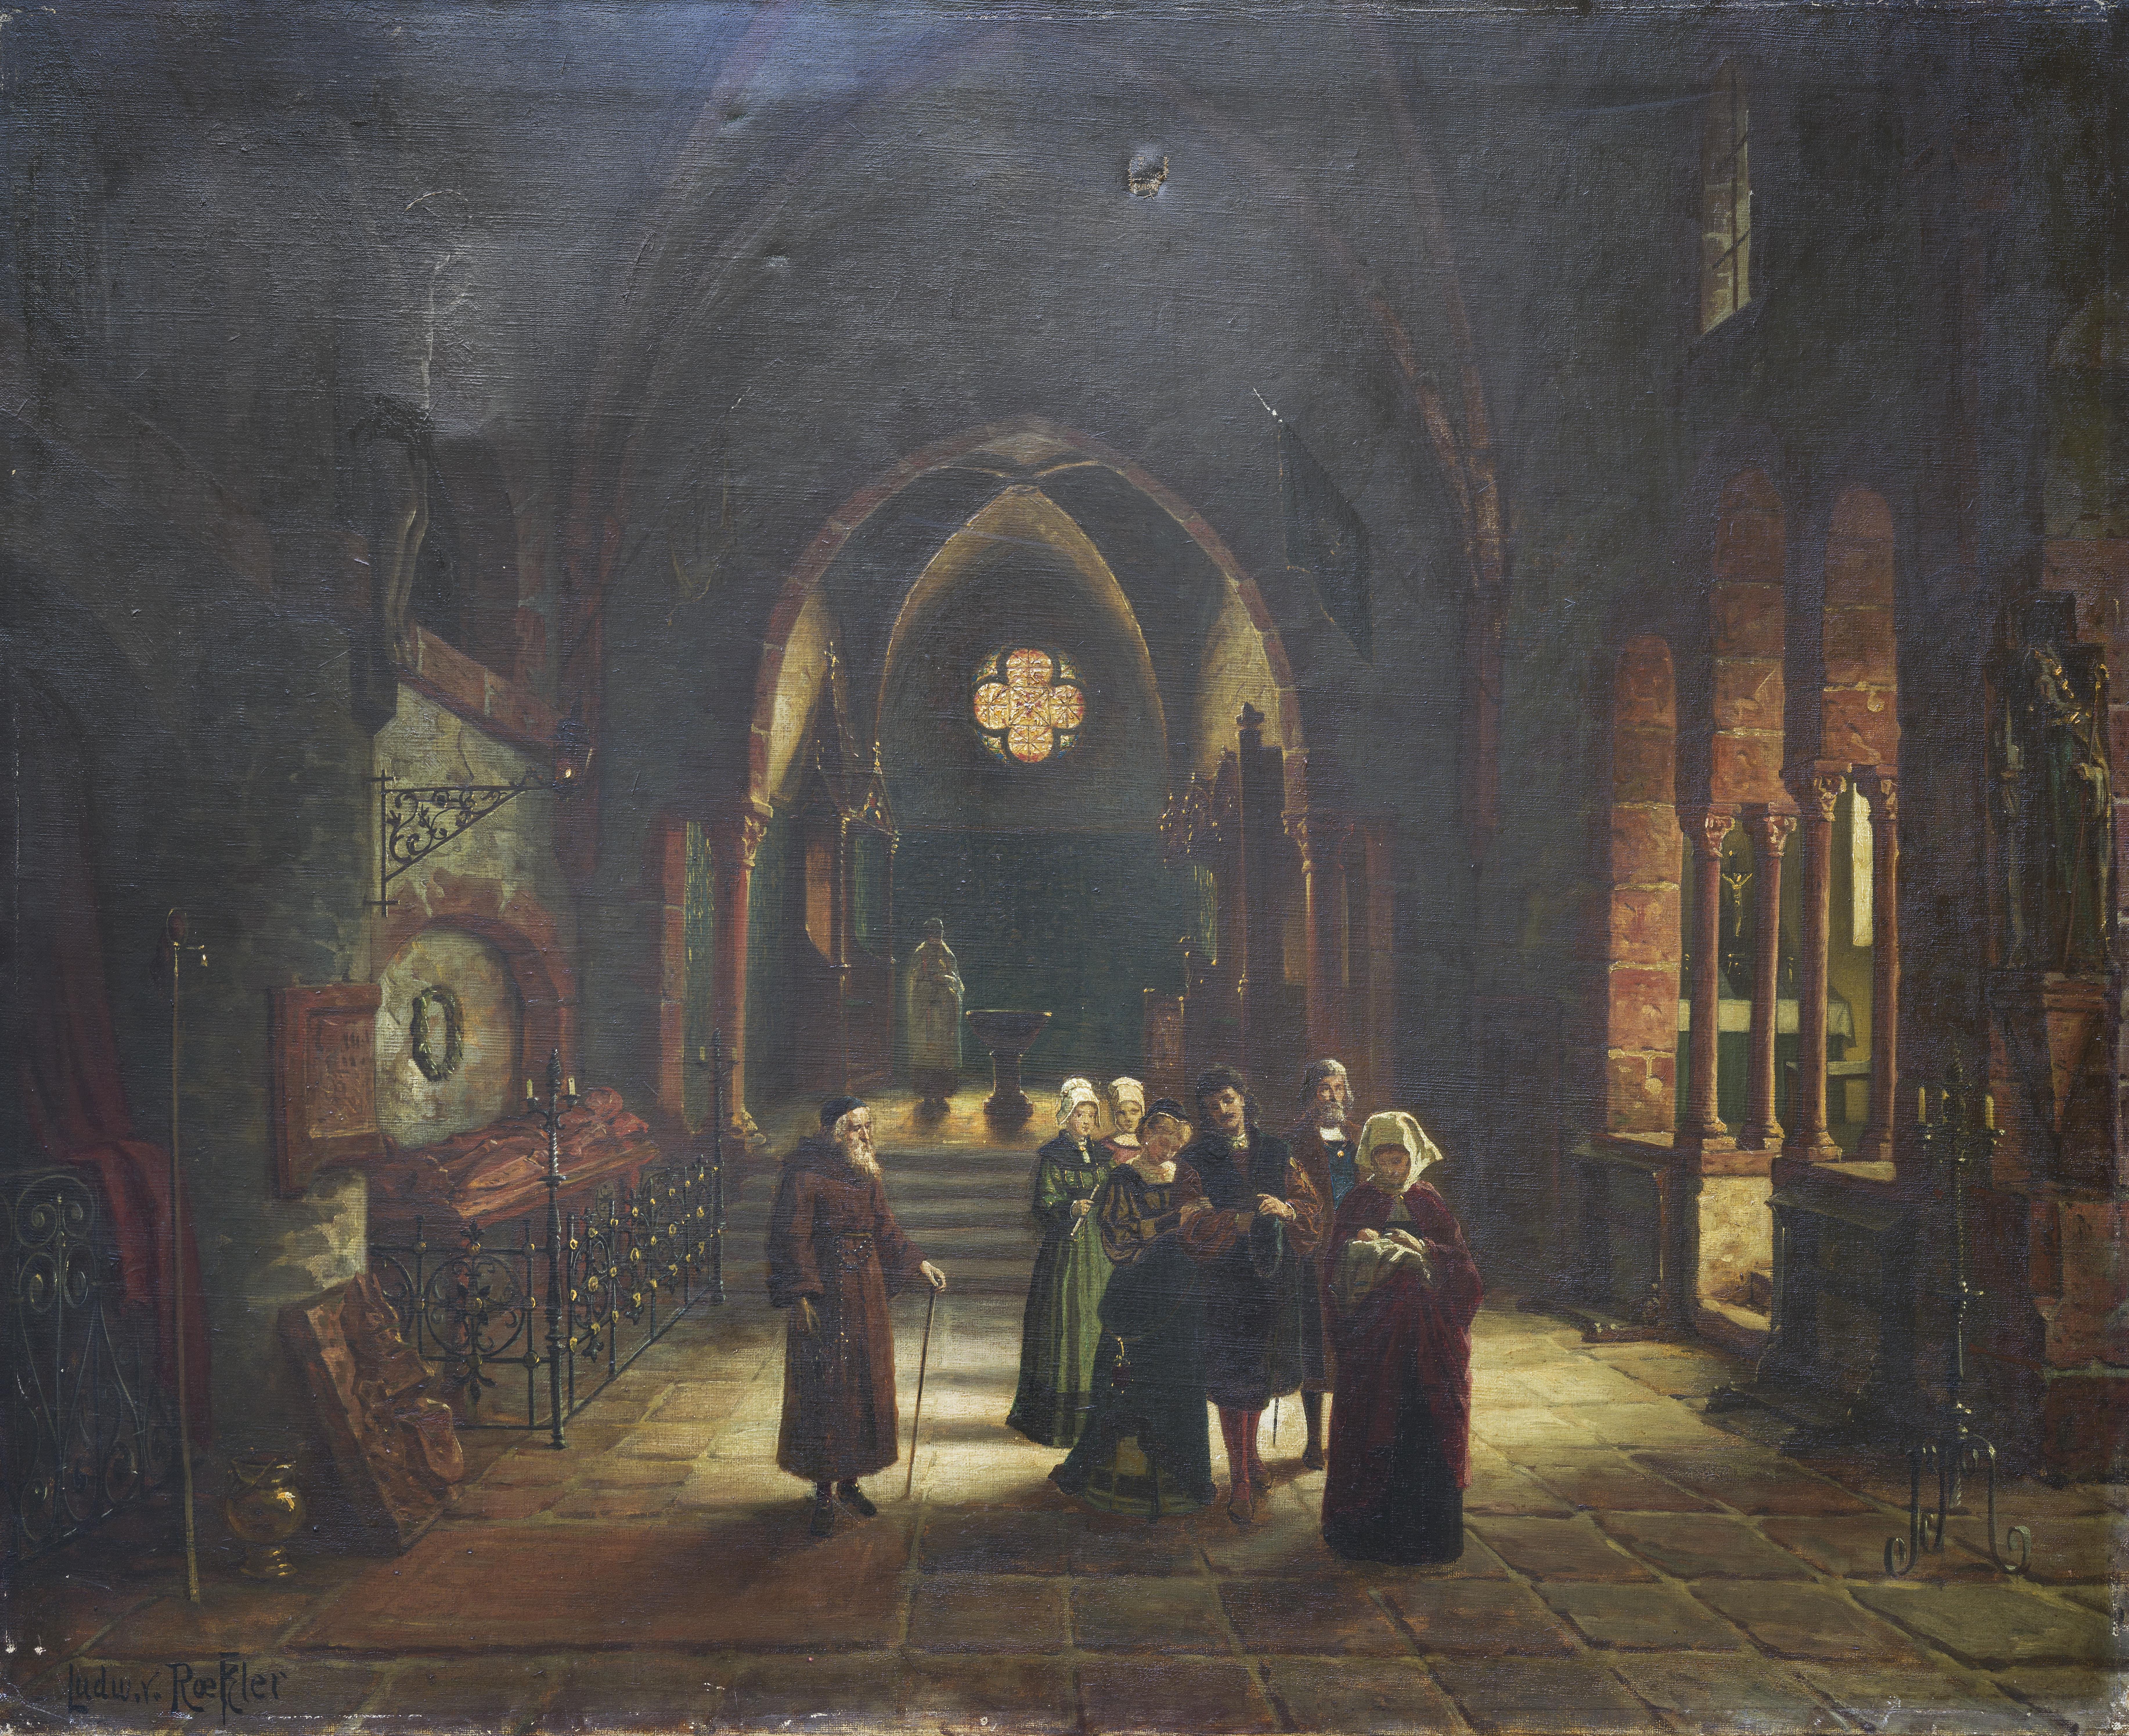 Nach der Taufe - Painting by Ludwig von Roekler